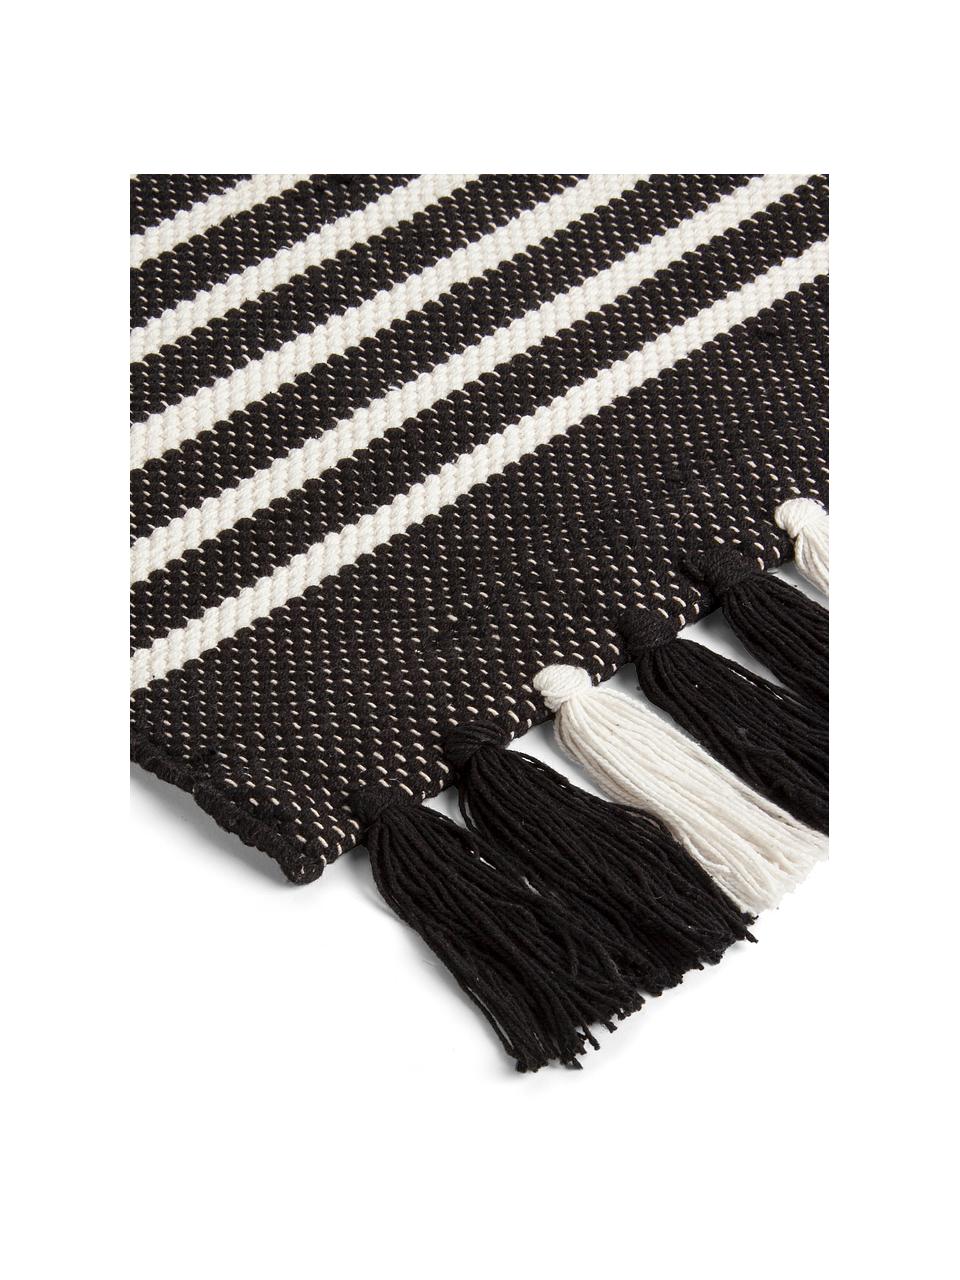 Koupelnový kobereček s třásněmi Stripes & Structure, 100% bavlna, Antracitová, světle bílá, Š 60 cm, D 100 cm